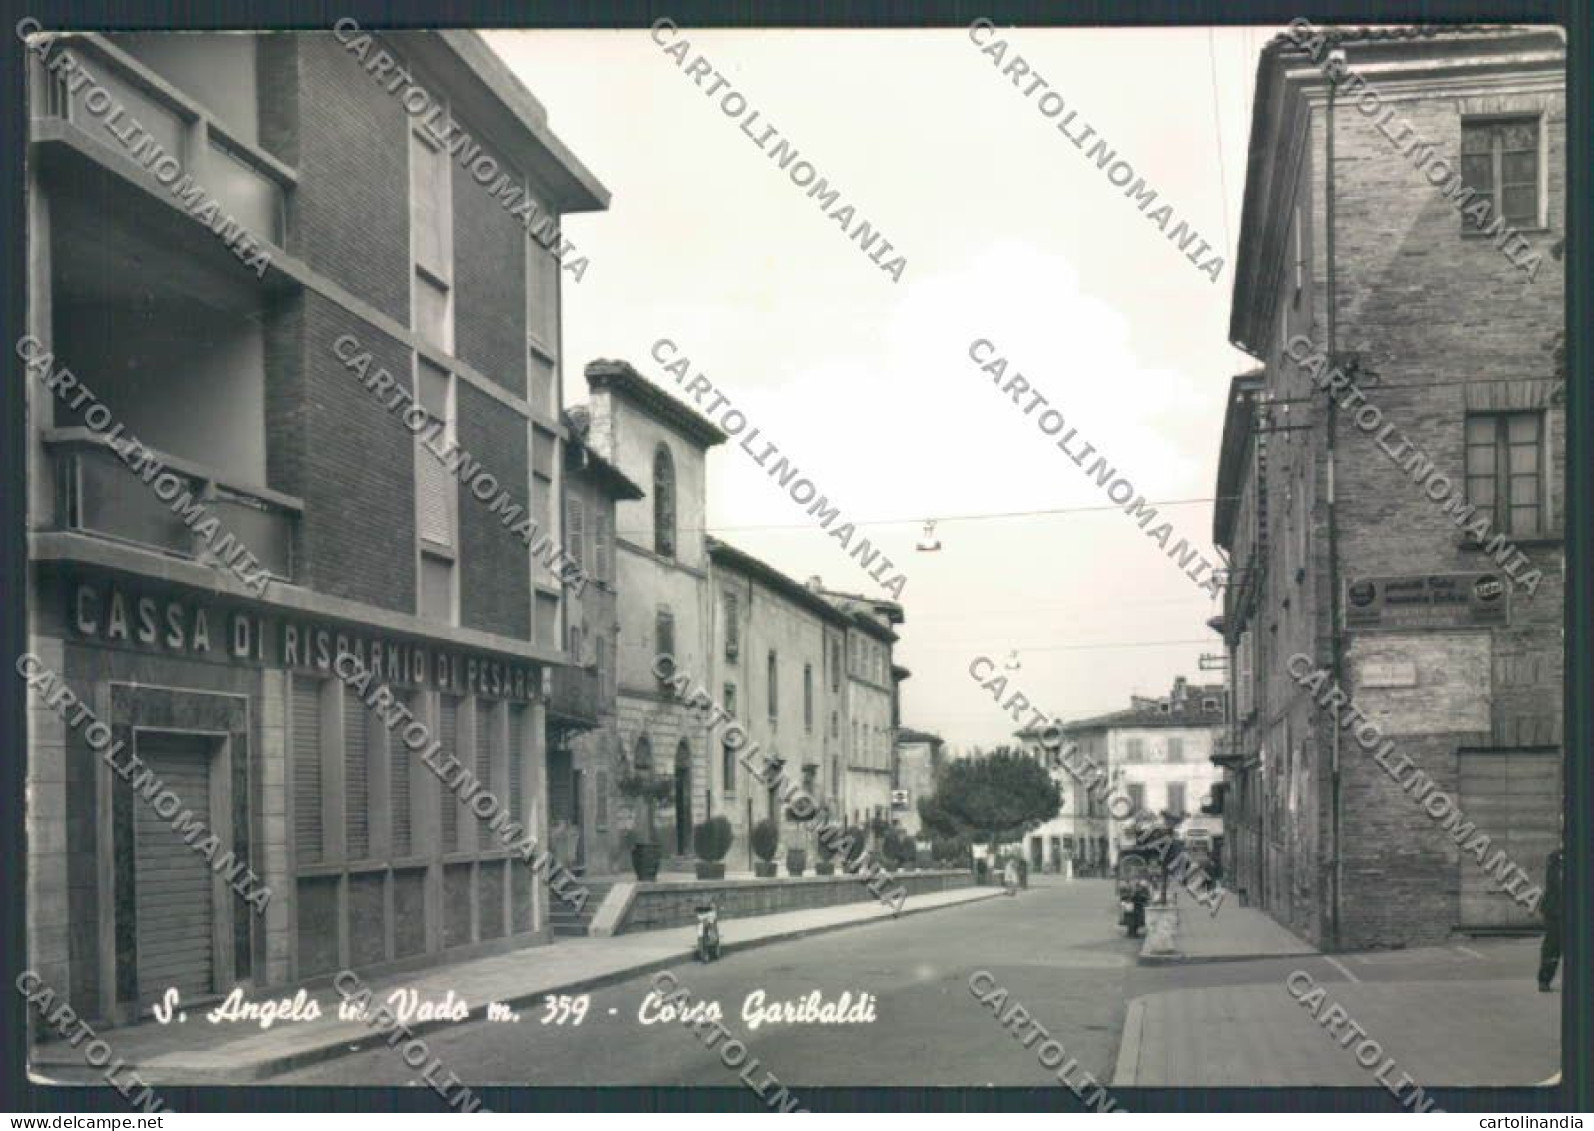 Pesaro Sant'Angelo In Vado Foto FG Cartolina ZF8325 - Pesaro